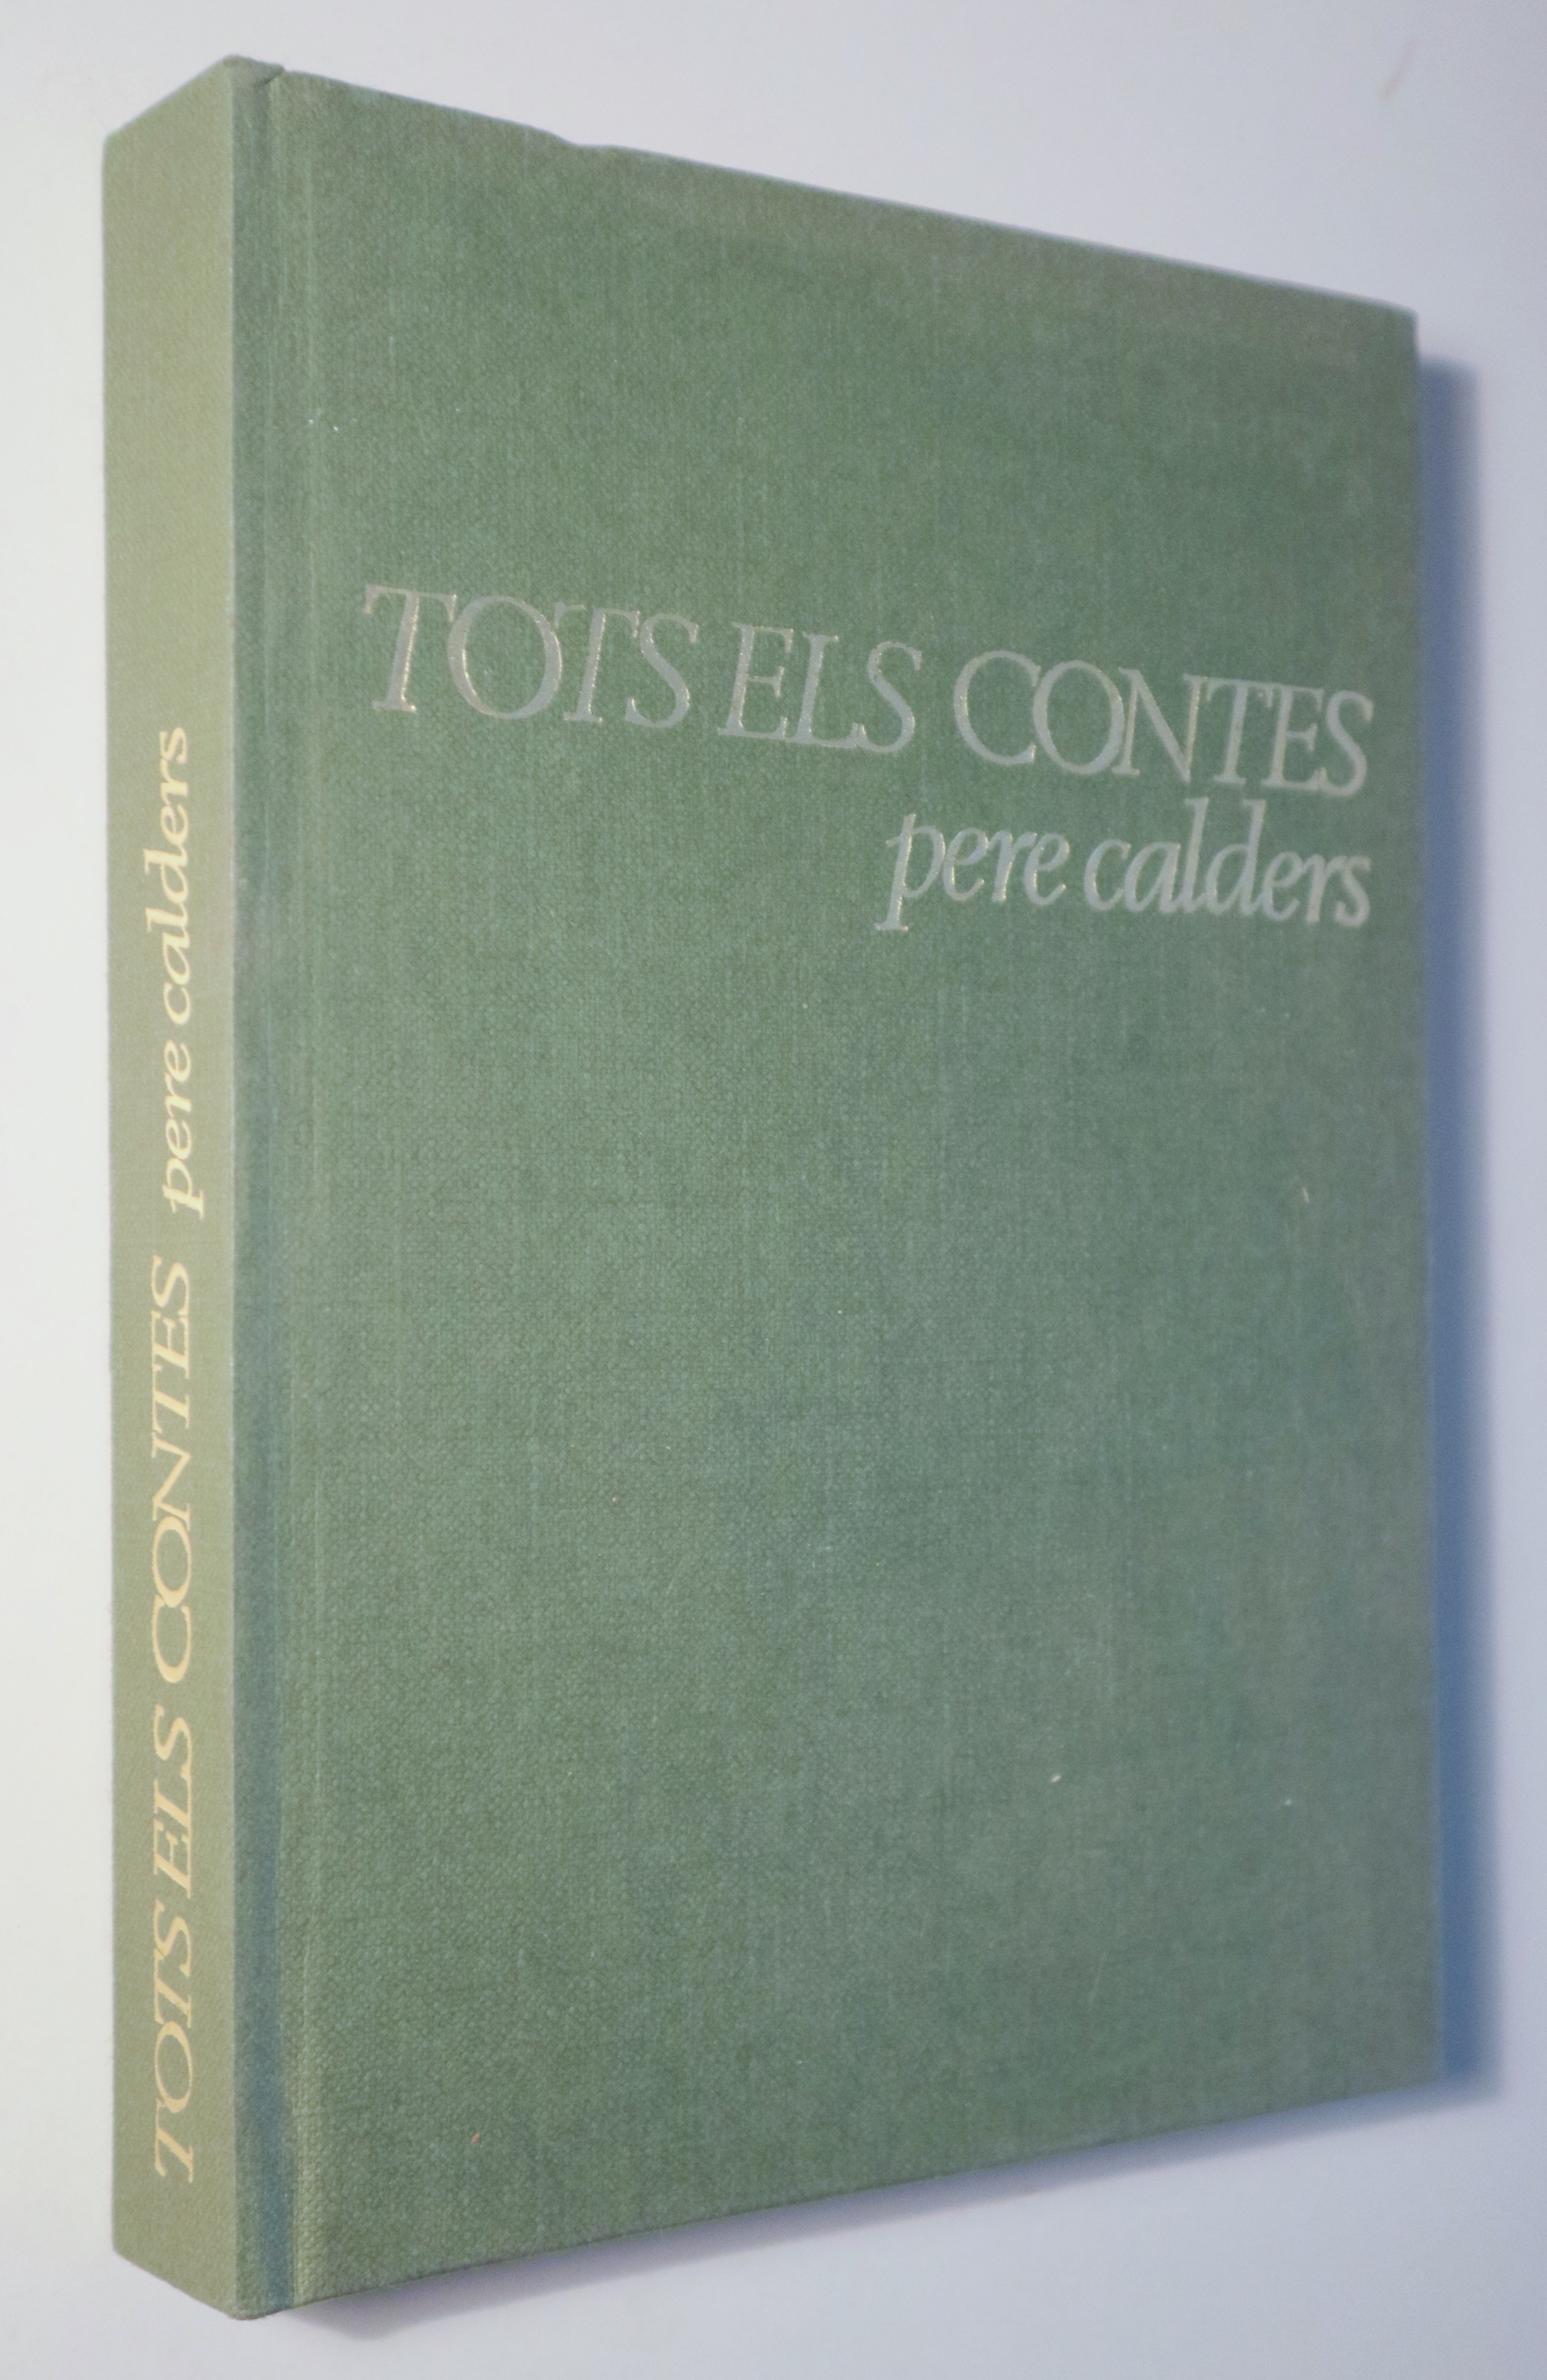 TOTS ELS CONTES - Barcelona 1973